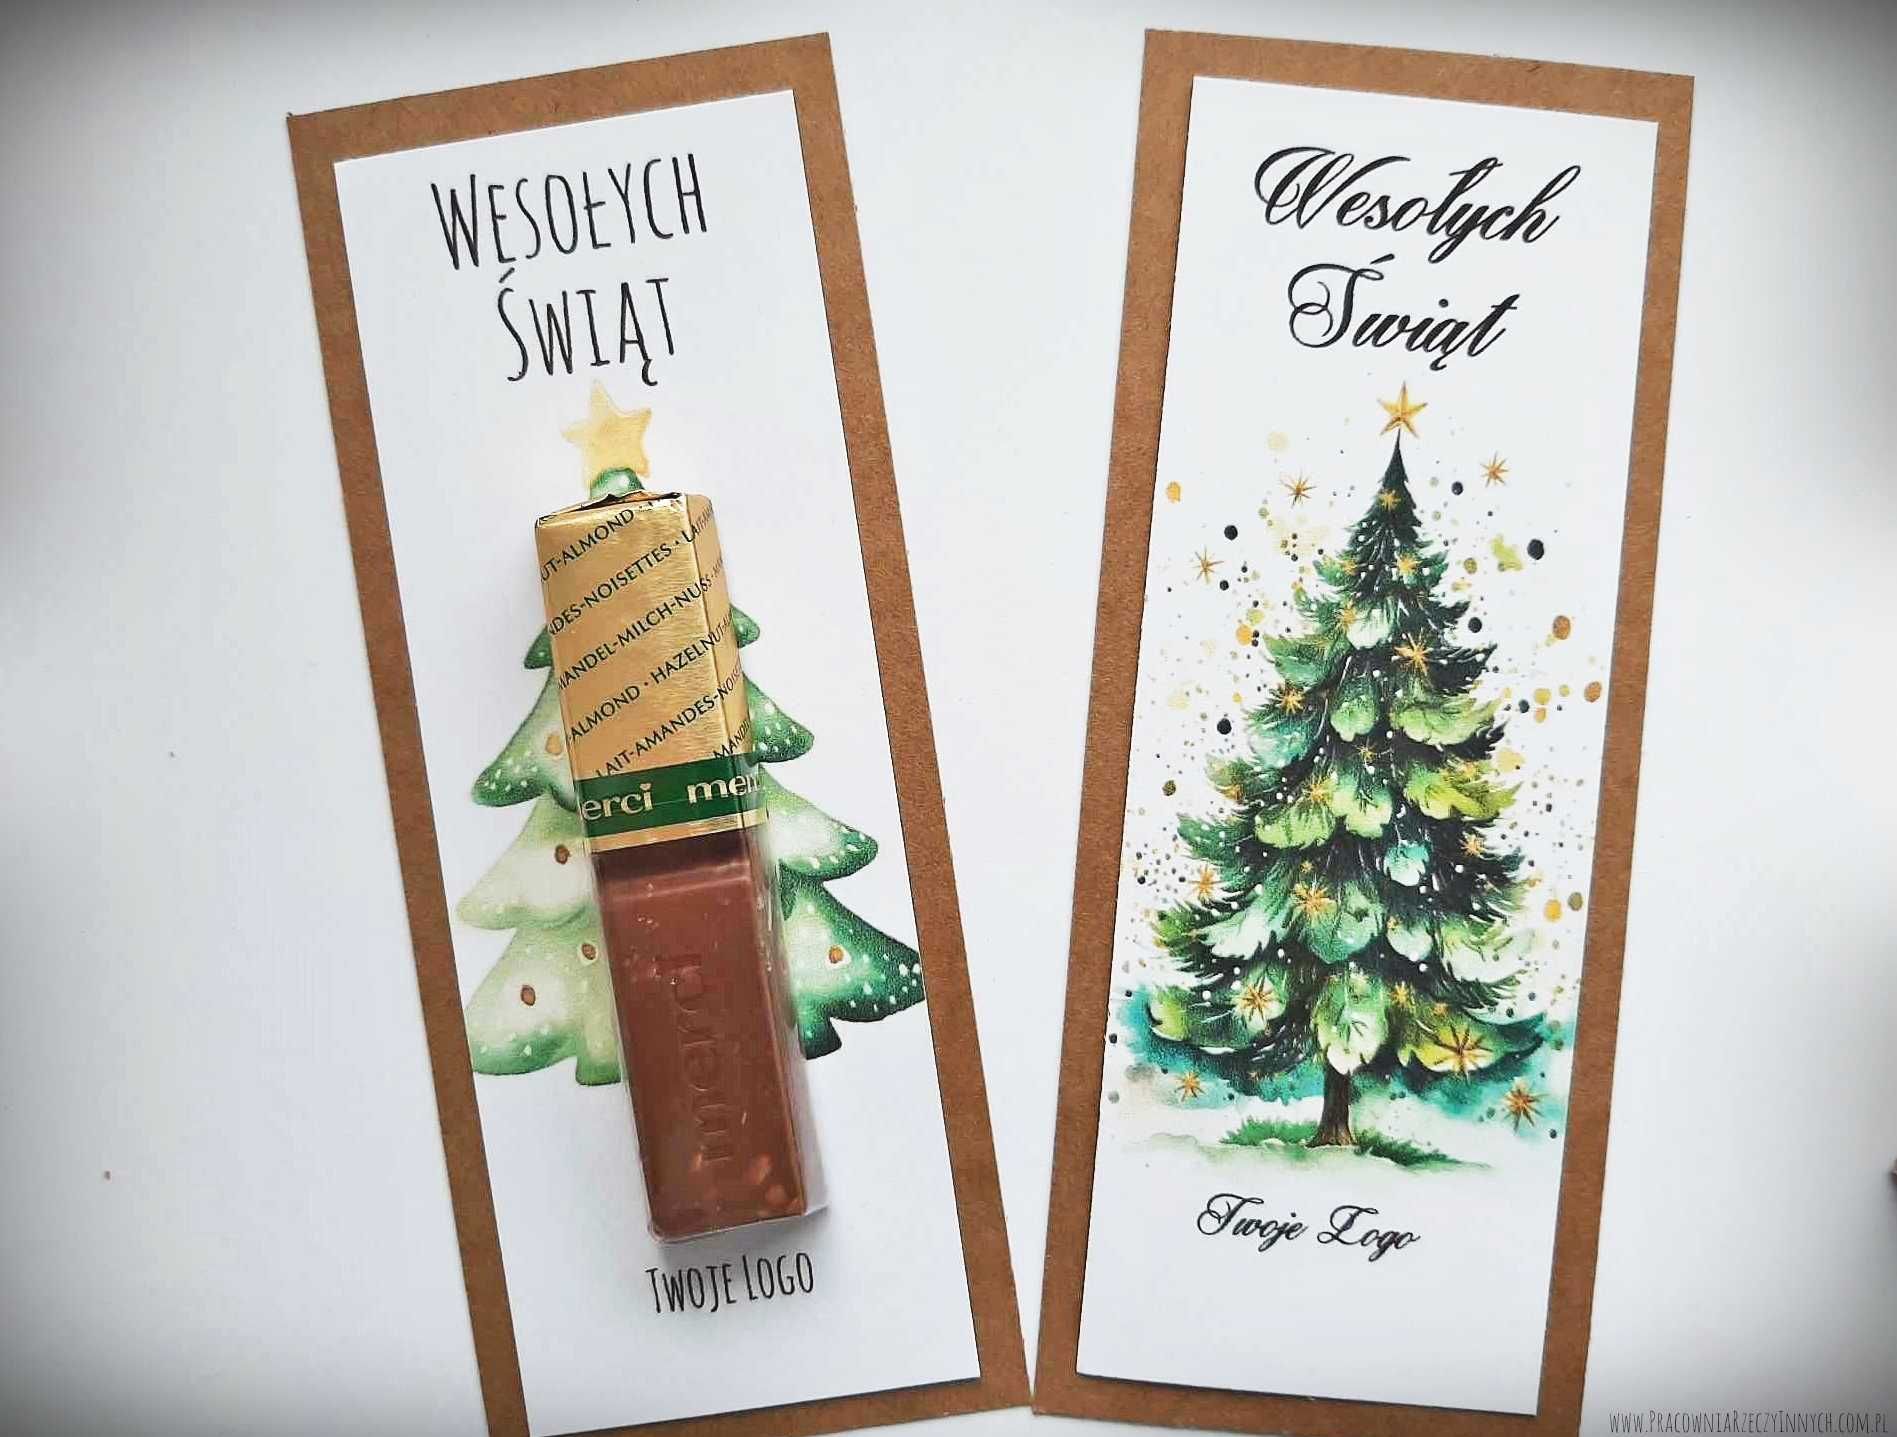 Upominki świąteczna z czekoladką, rękodzieło, eko rustykalne, logo